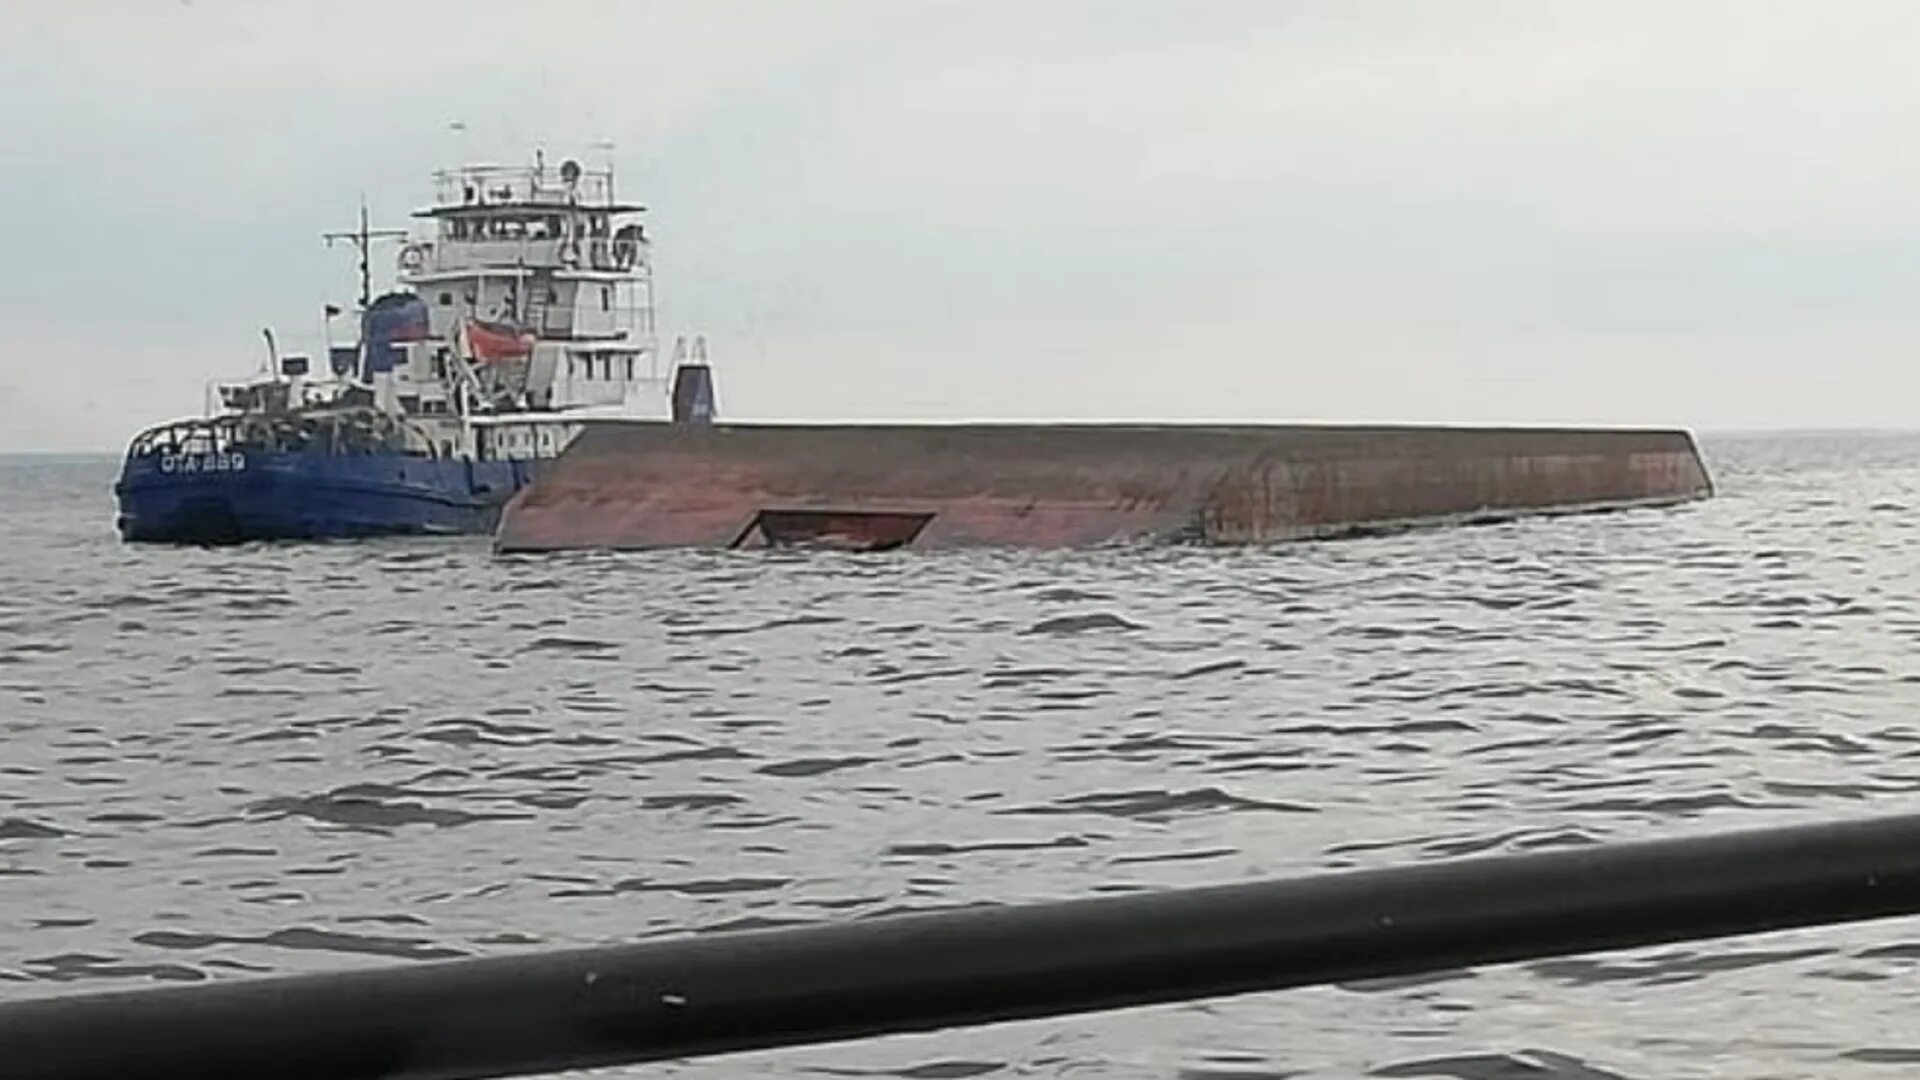 504 ожидание шлюза. Затонувшая баржа в Рыбинском водохранилище. Рыбинское водохранилище затонула баржа. 28 Августа 2020 года, в Рыбинском водохранилище затонула баржа. Шторм на Рыбинском водохранилище.